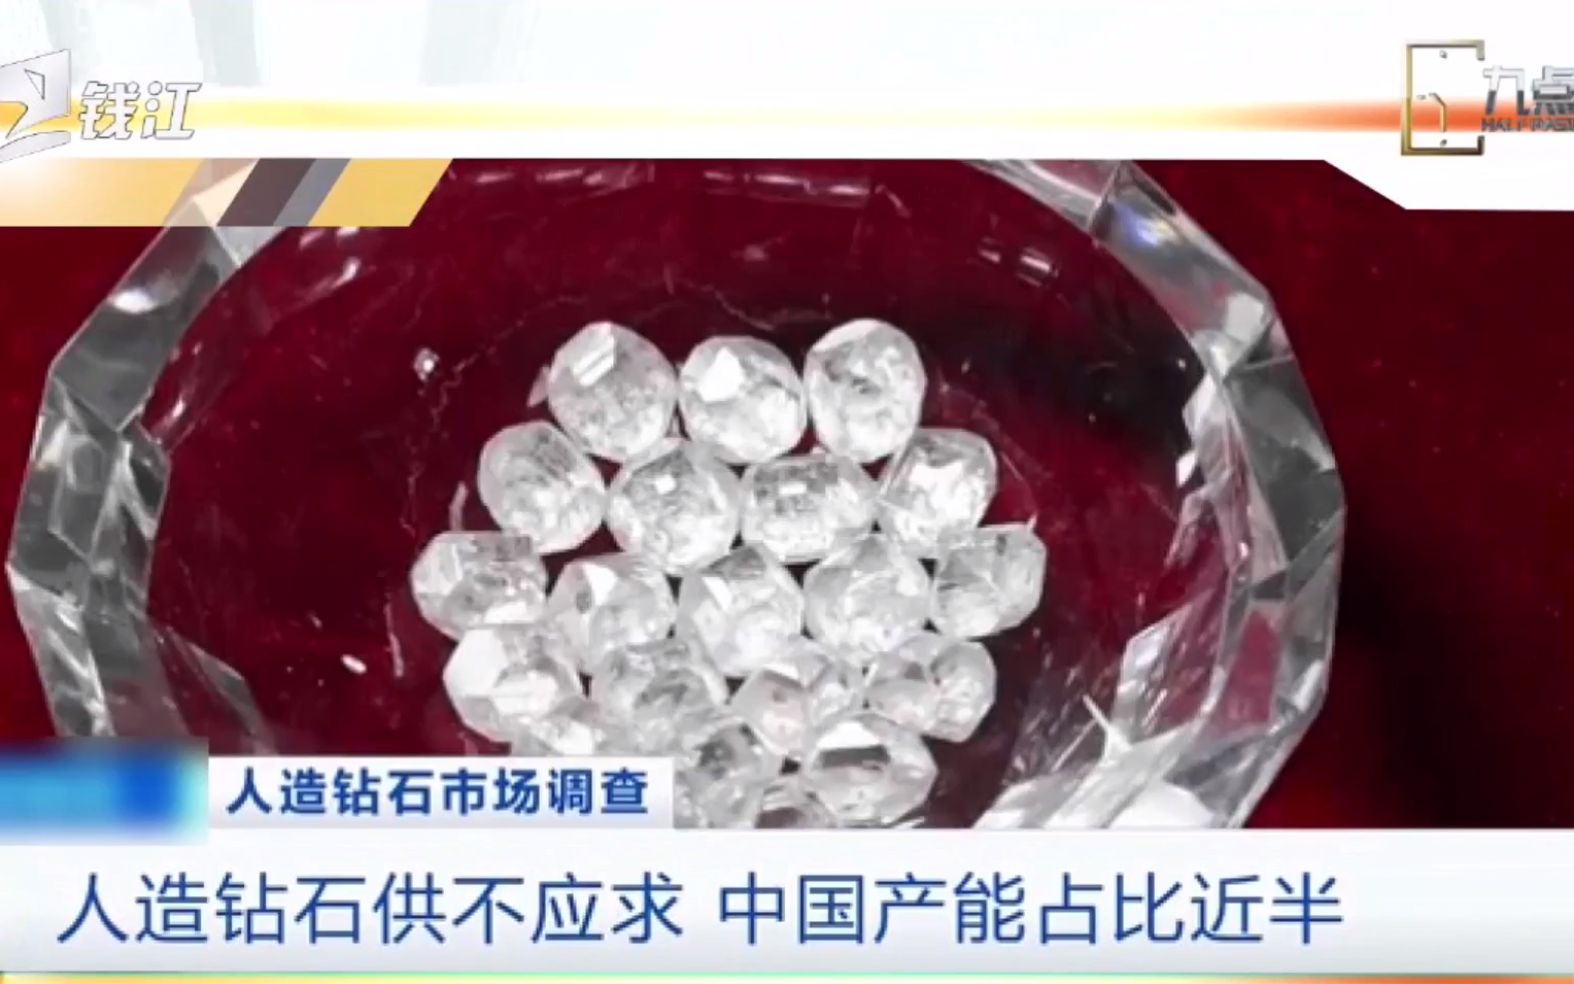 中国人造钻石产能约占全球一半，实验室能培育10克拉人造钻石